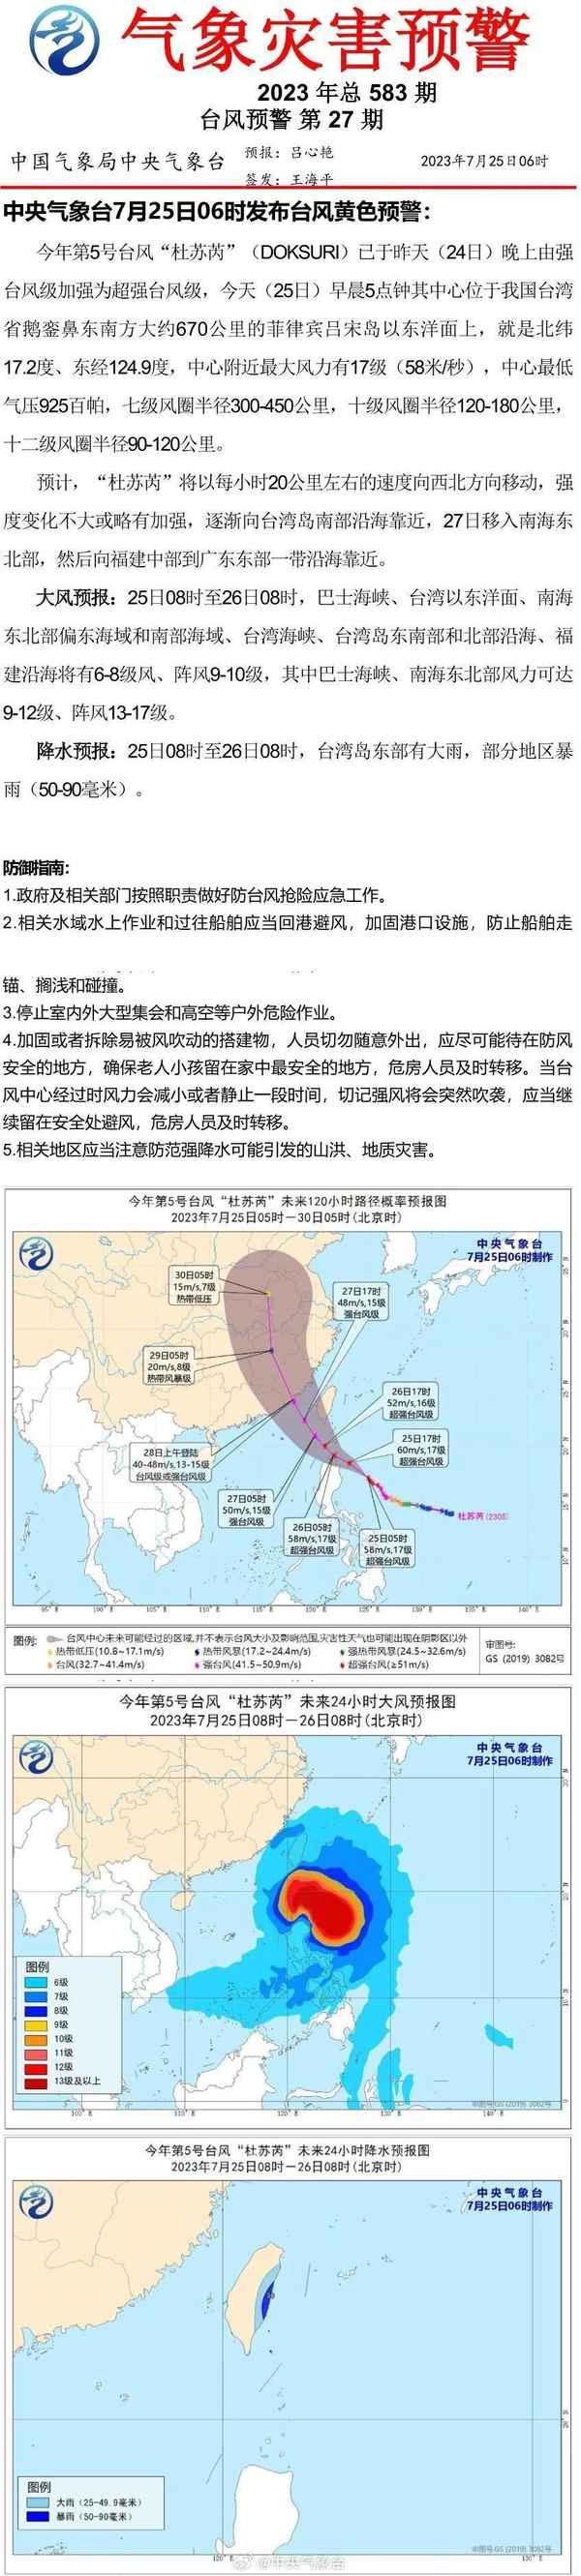 今年的台风杜苏芮、今年台风2021